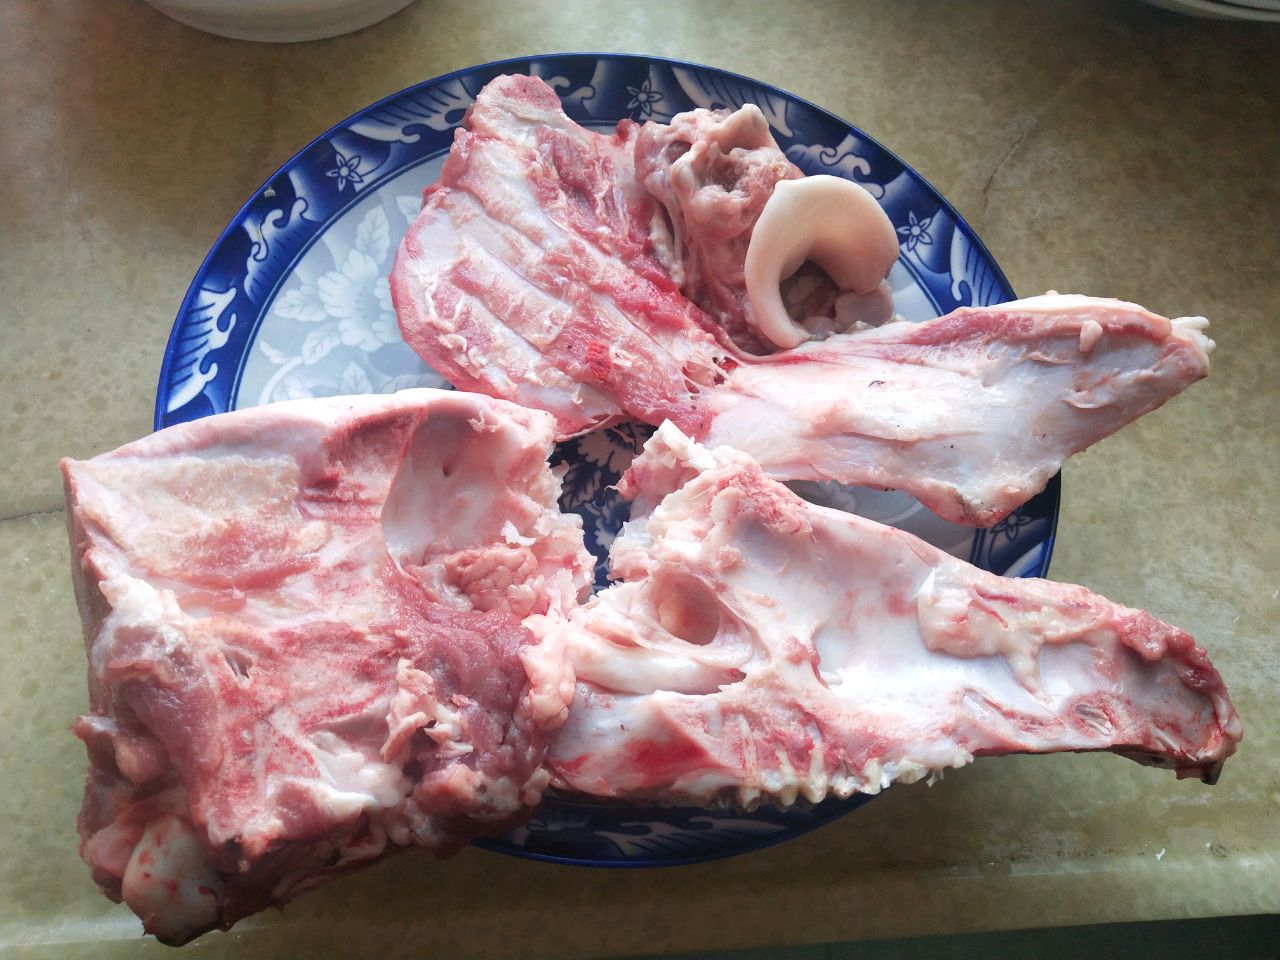 猪头骨结构解剖图图片